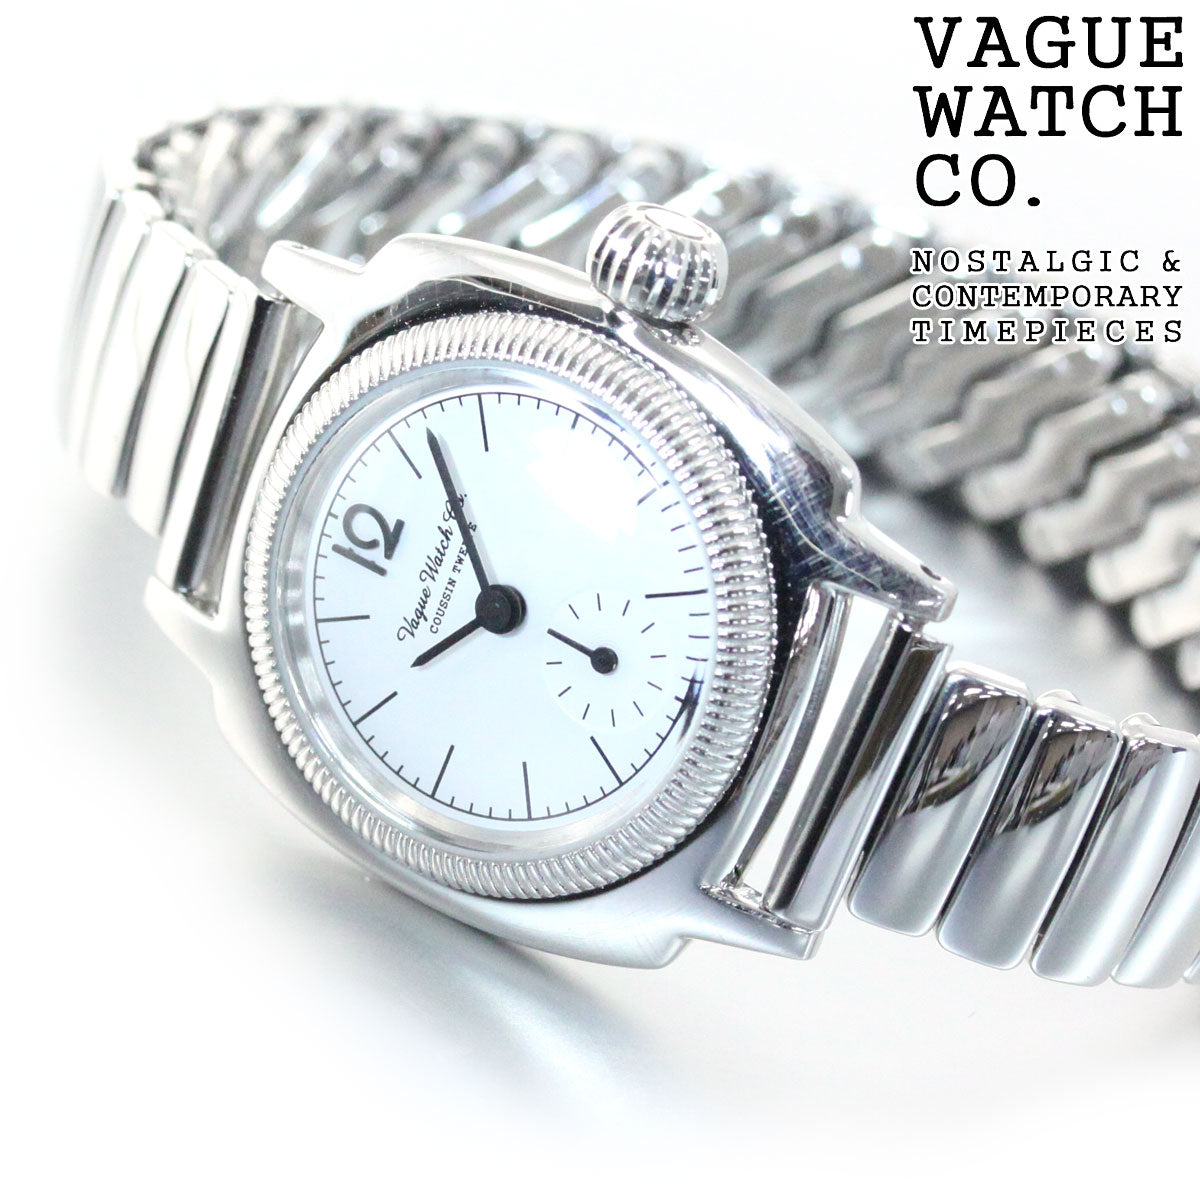 ヴァーグウォッチ VAGUE WATCH Co. 腕時計 レディース COUSSIN 12 CO-S